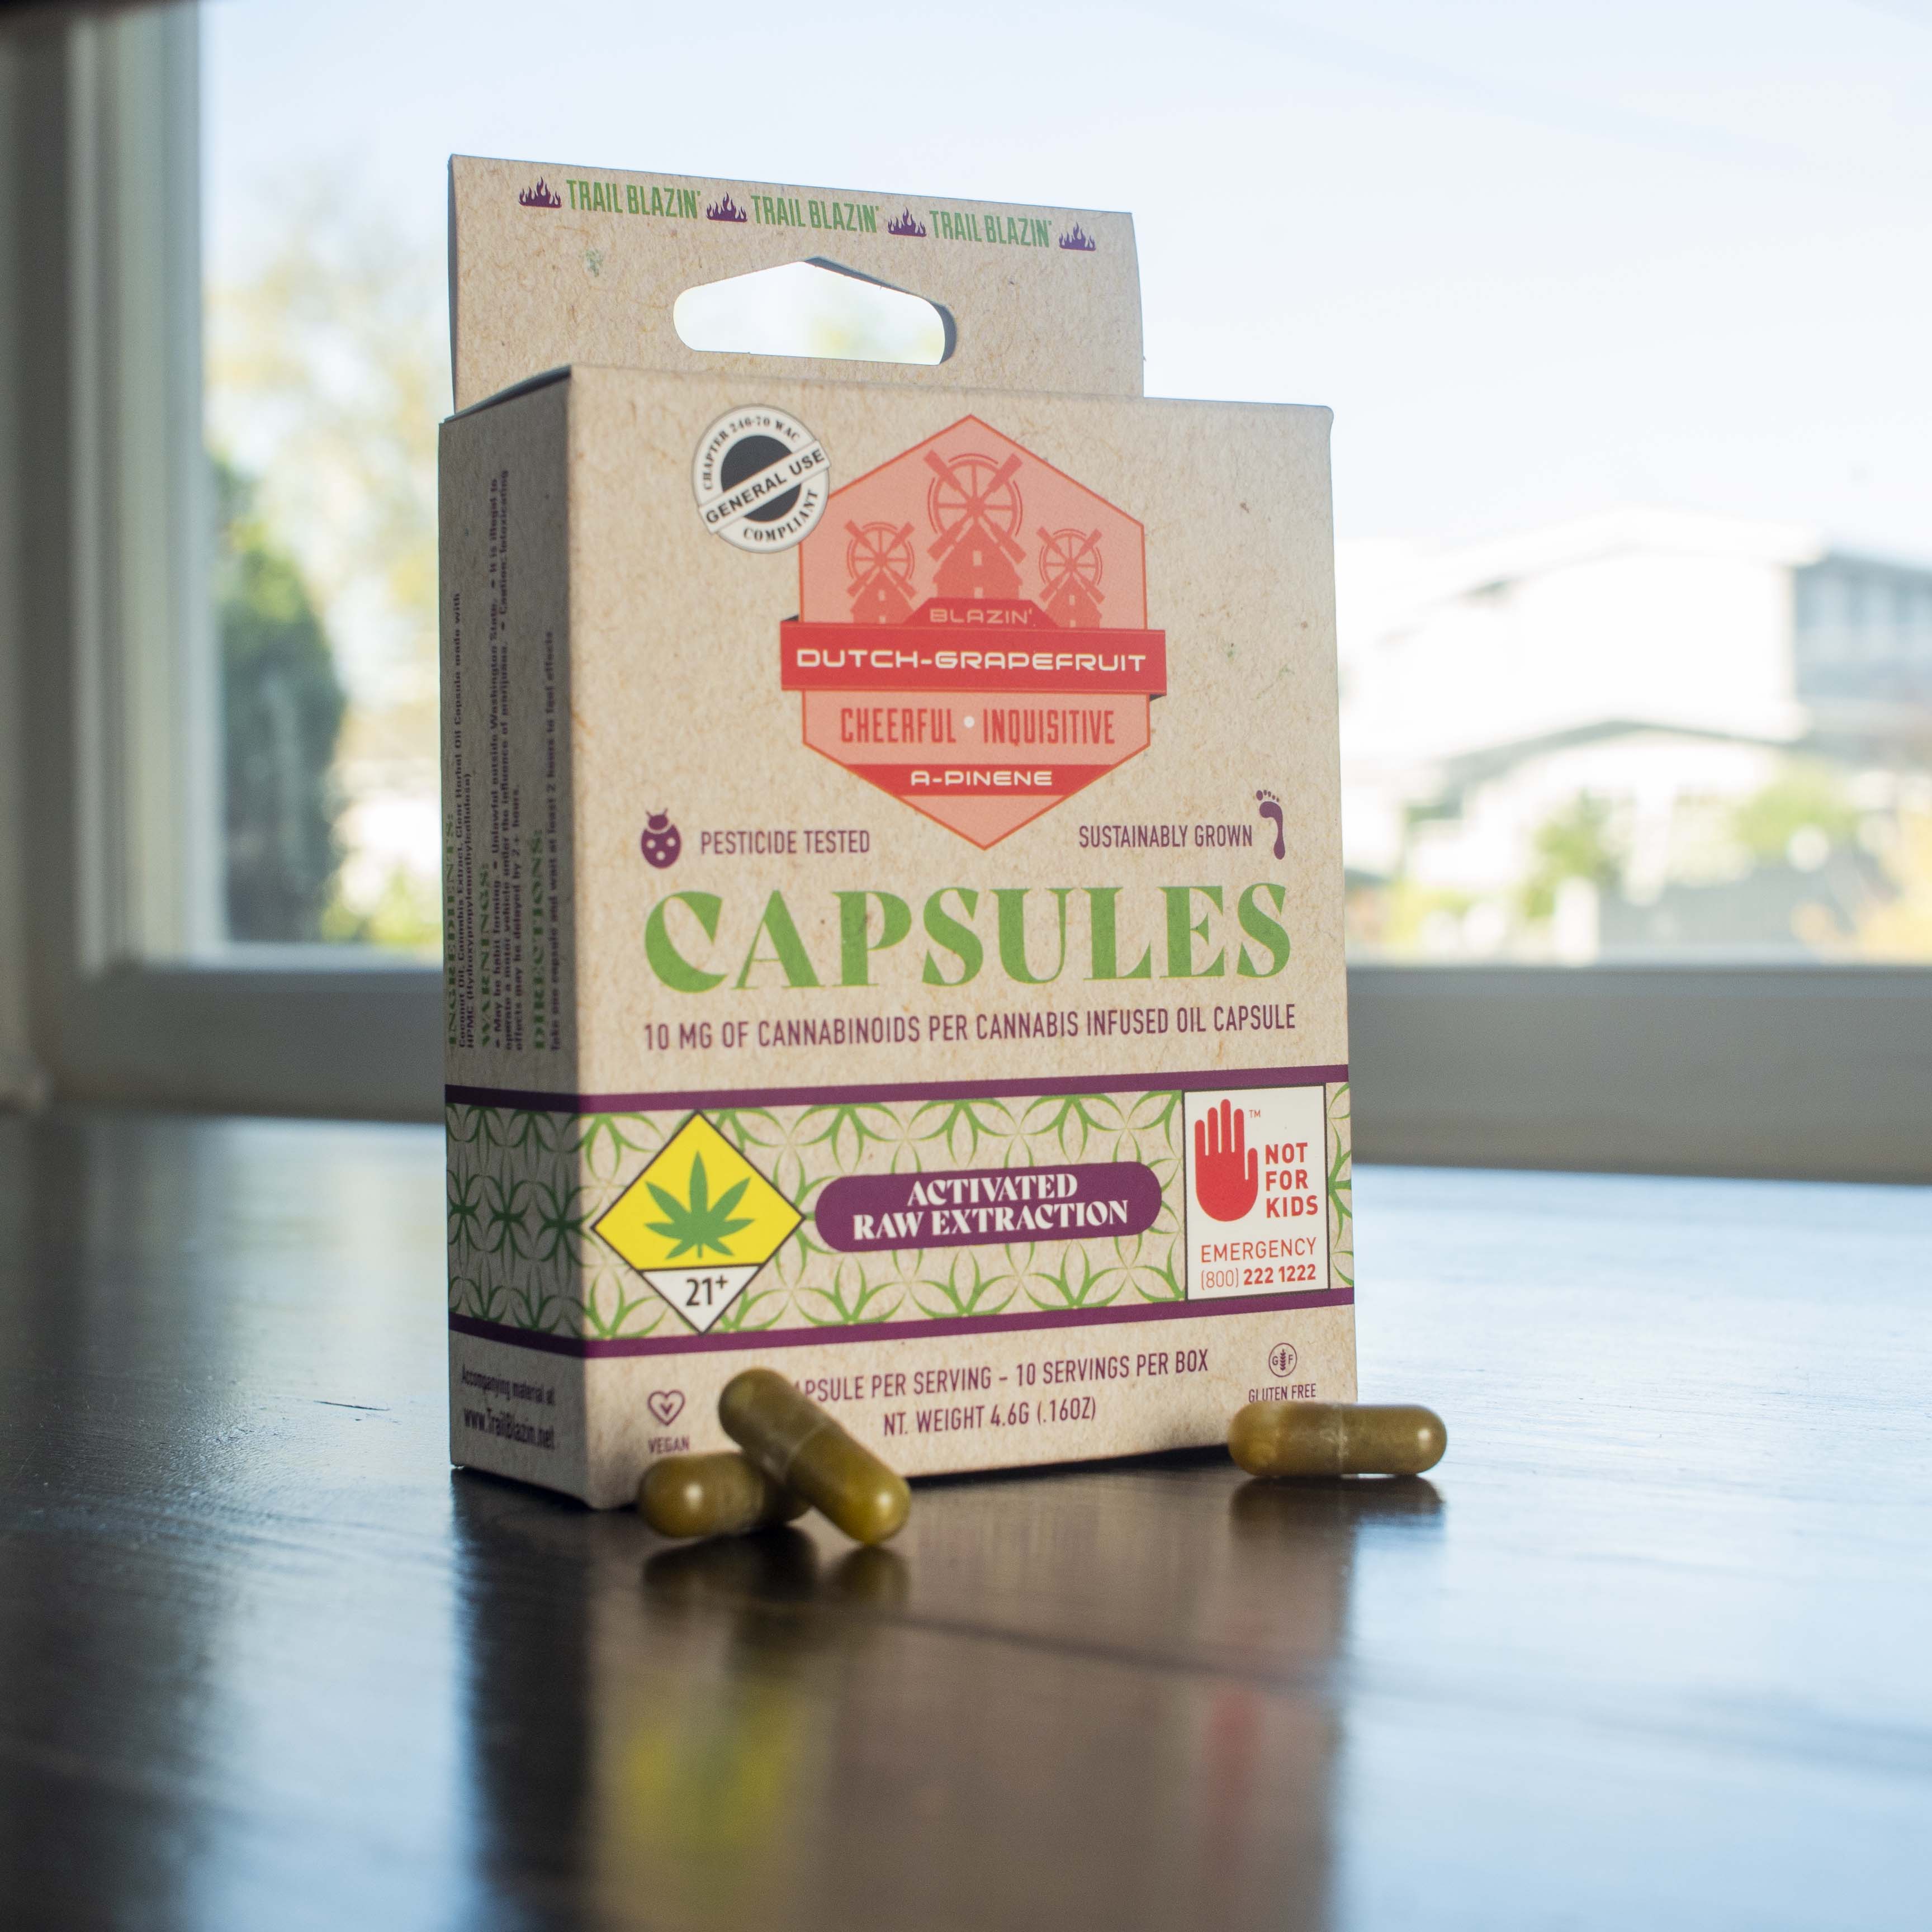 Dutch Grapefruit capsule box with capsules.